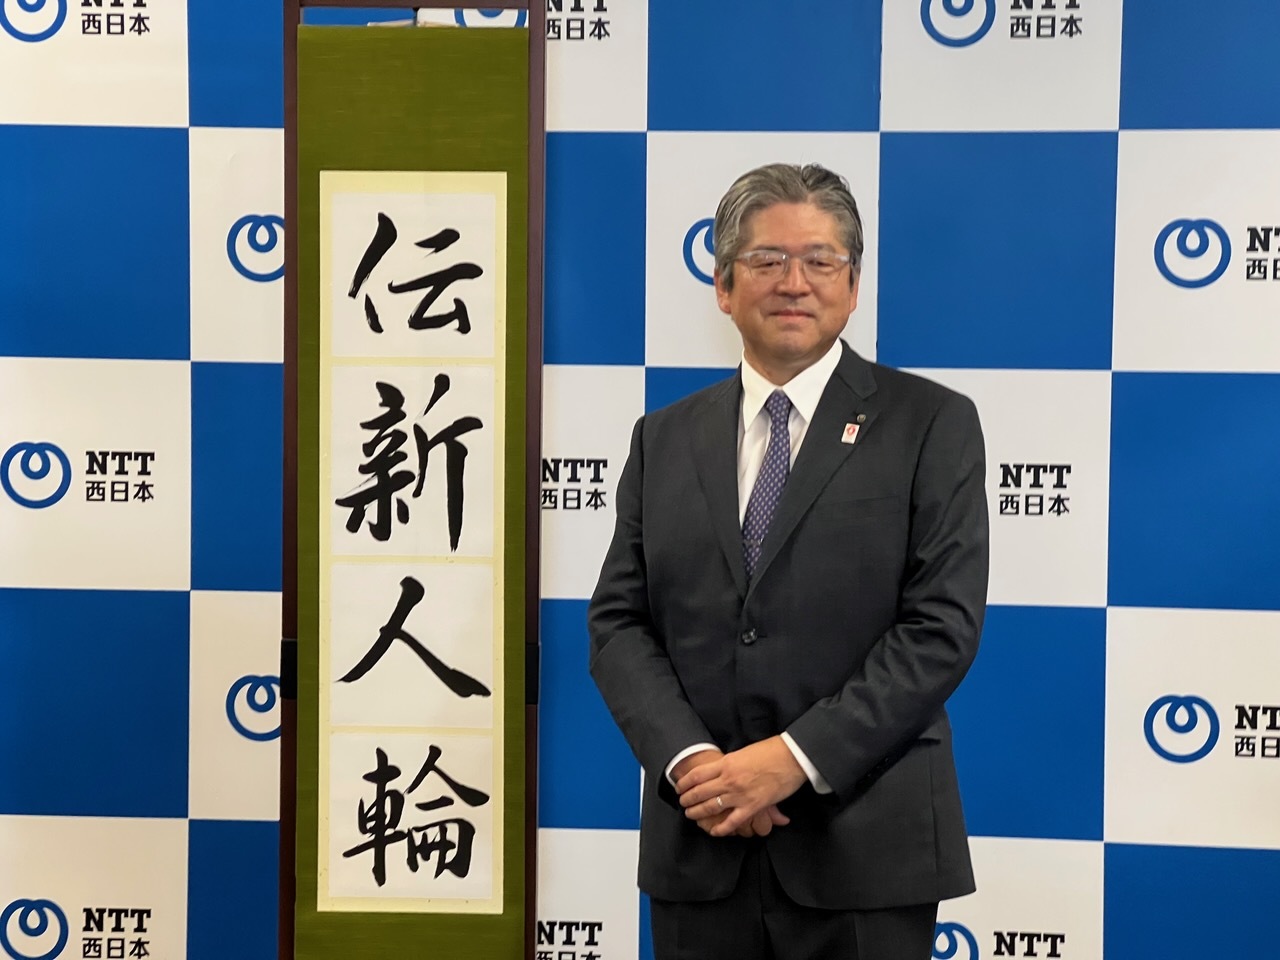 「社長に選ばれたことは自身にとっても驚きだった」と語るNTT西日本の森林正彰新社長